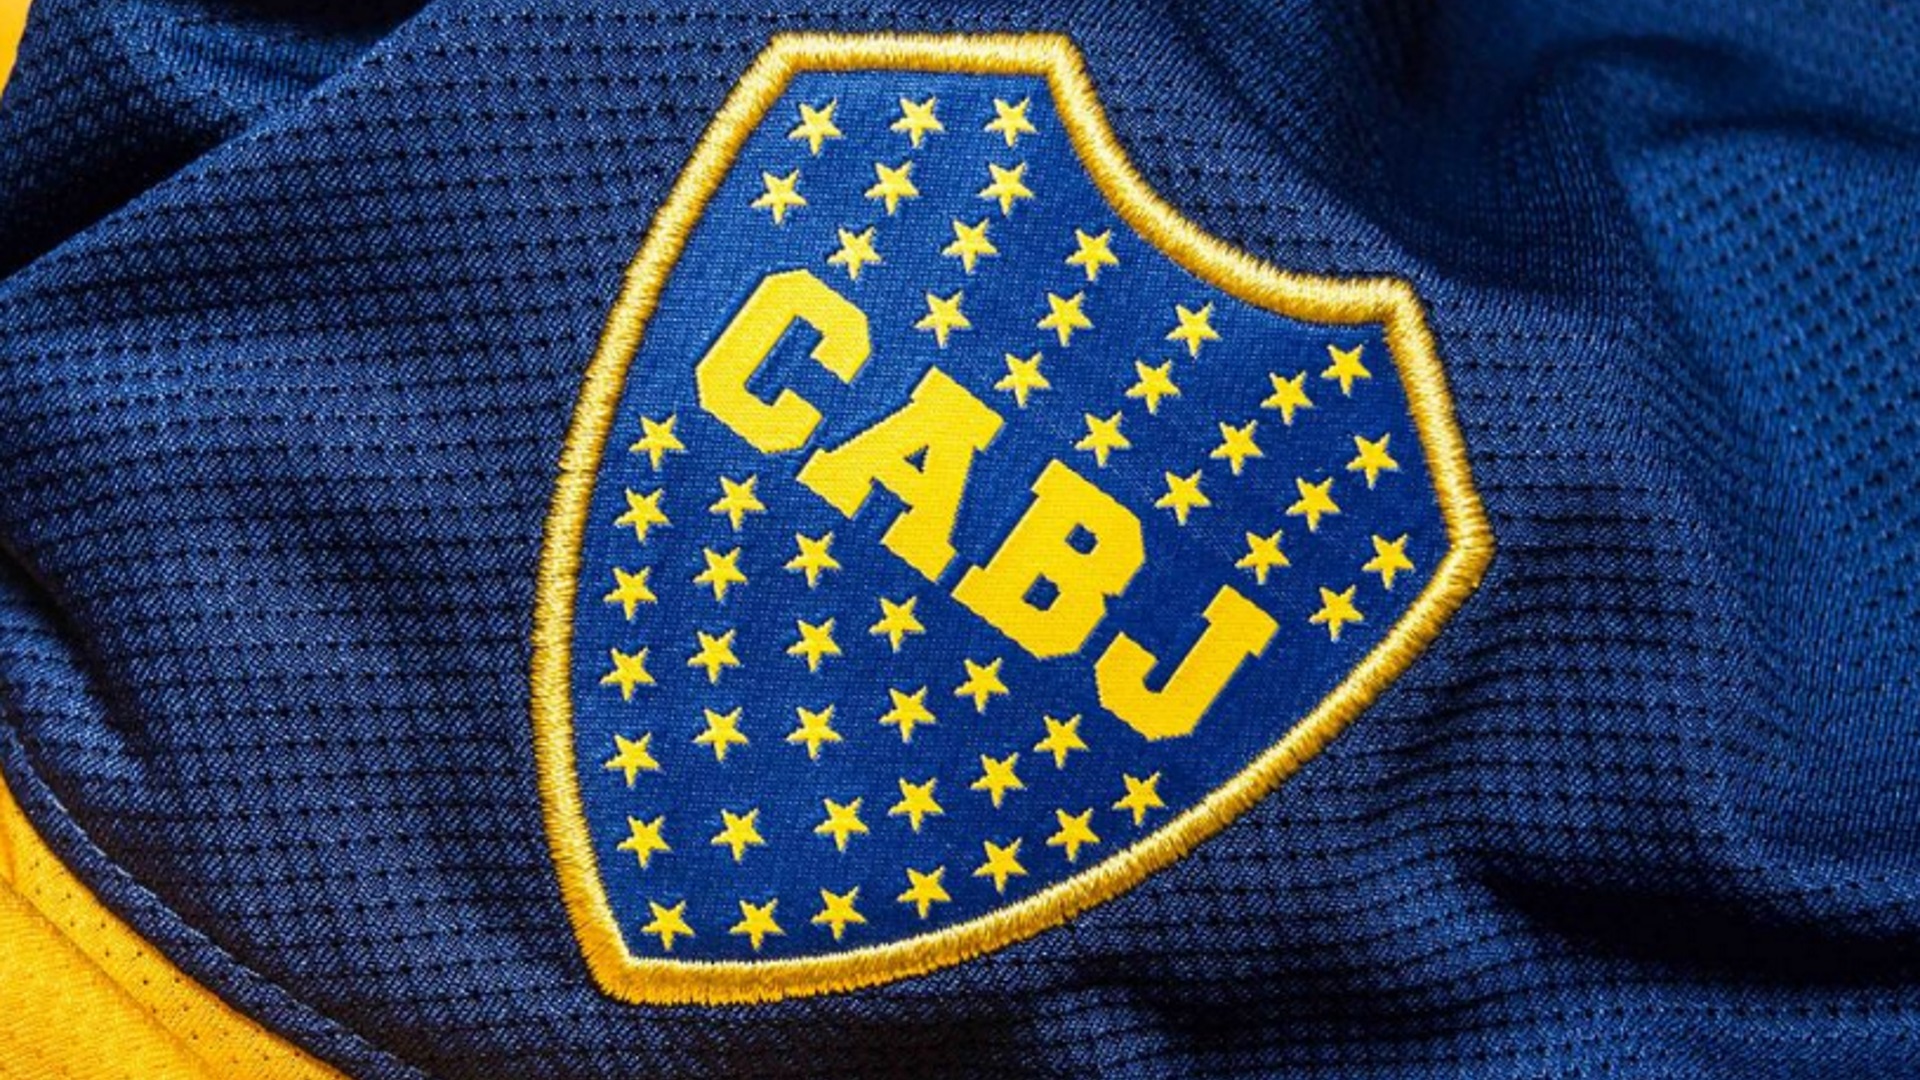 El escudo de Boca Juniors tendrá a partir de ahora 71 estrellas.